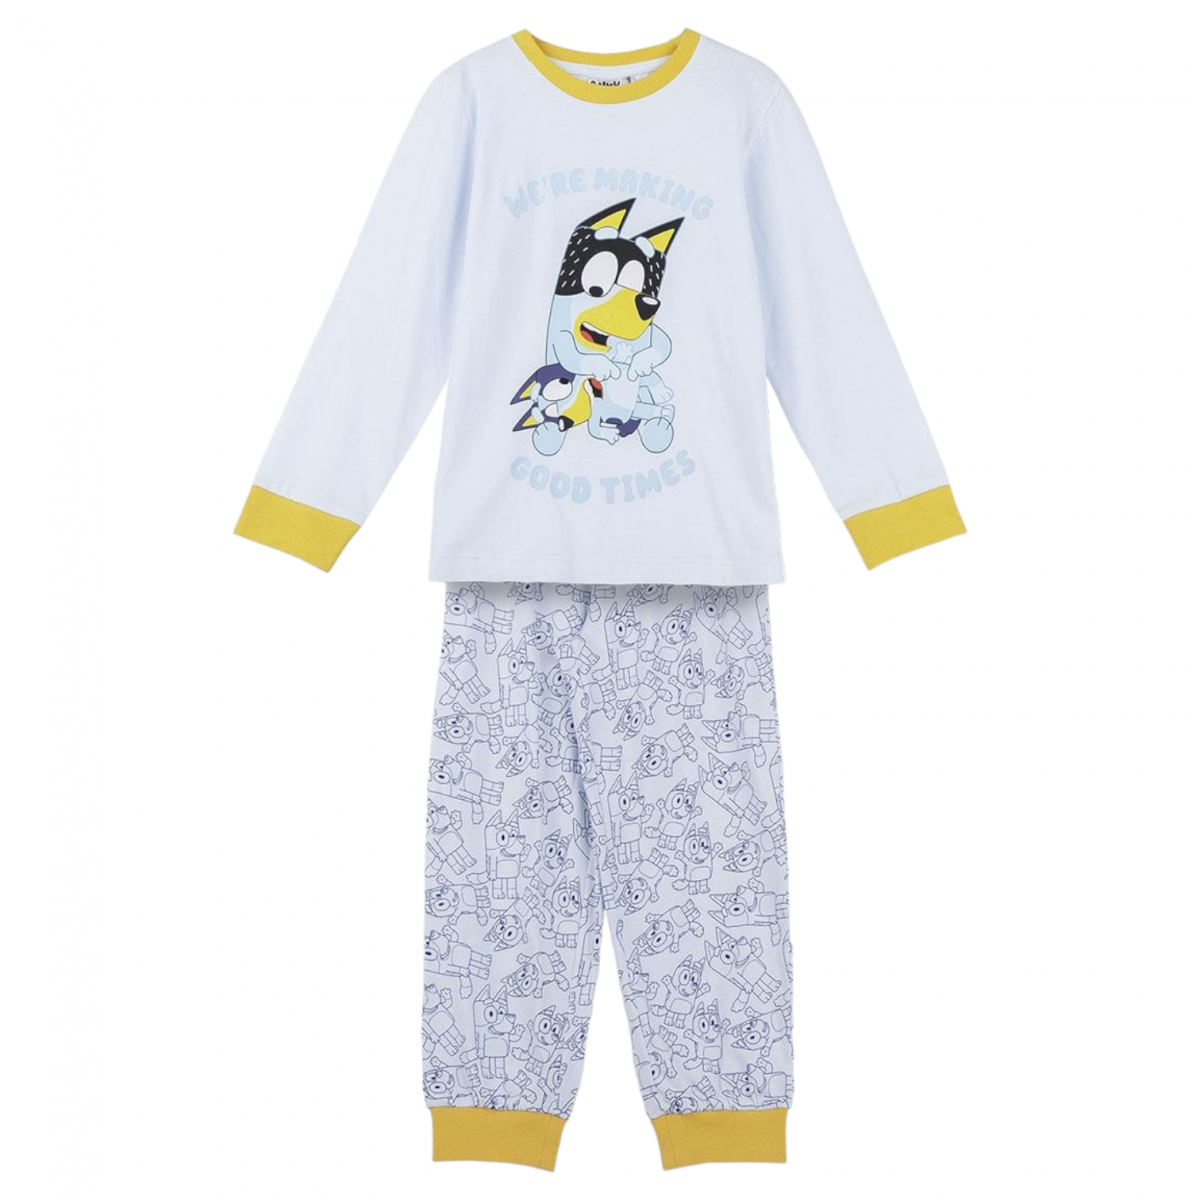 Pijama Bluey algodón Interlock. Tienda online moda y complementos.